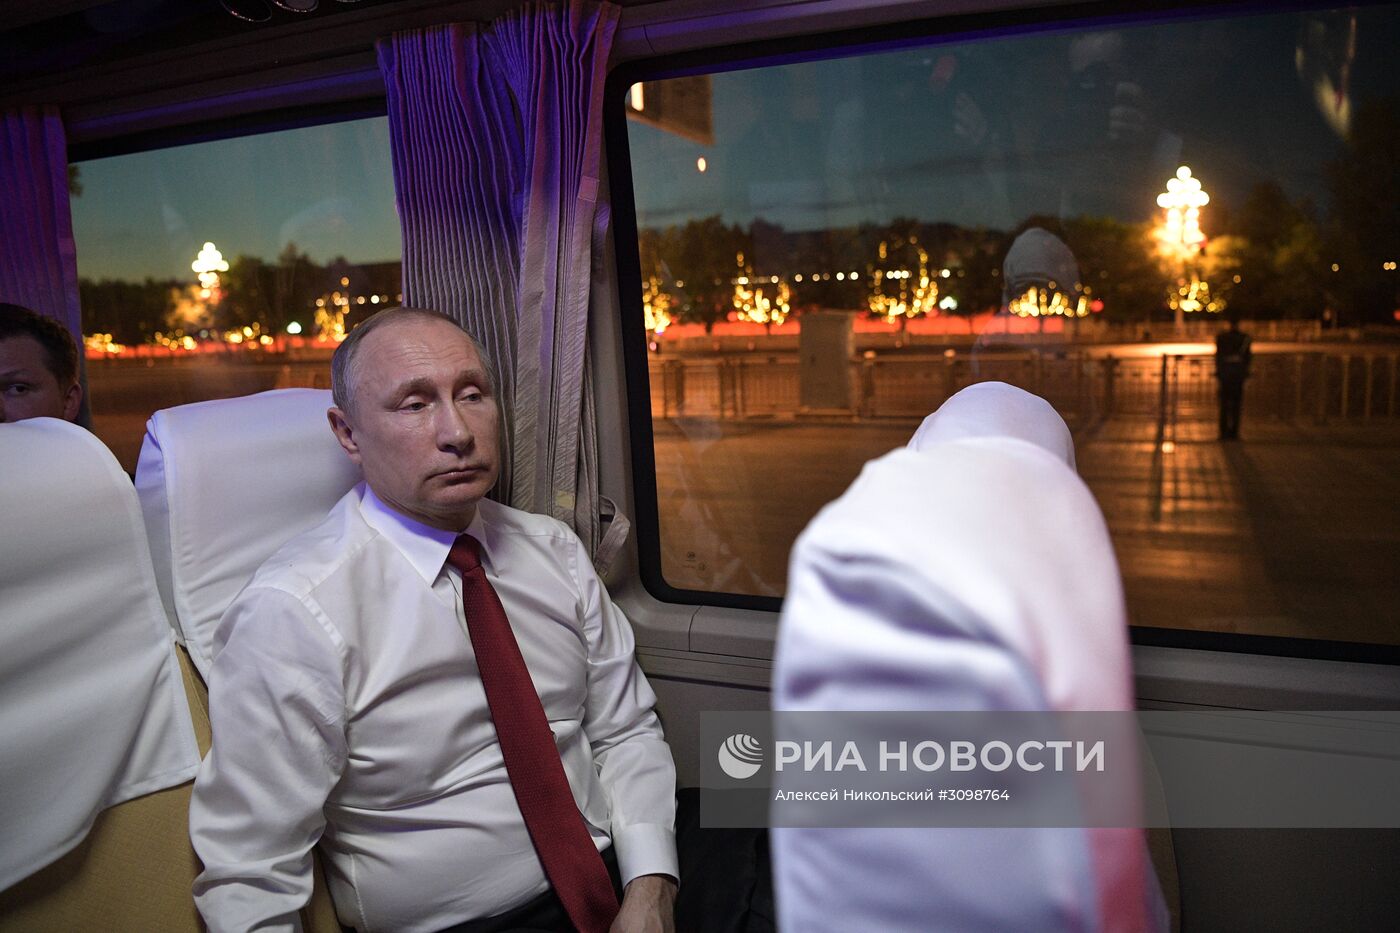 Рабочая поездка президента РФ В. Путина в Китай